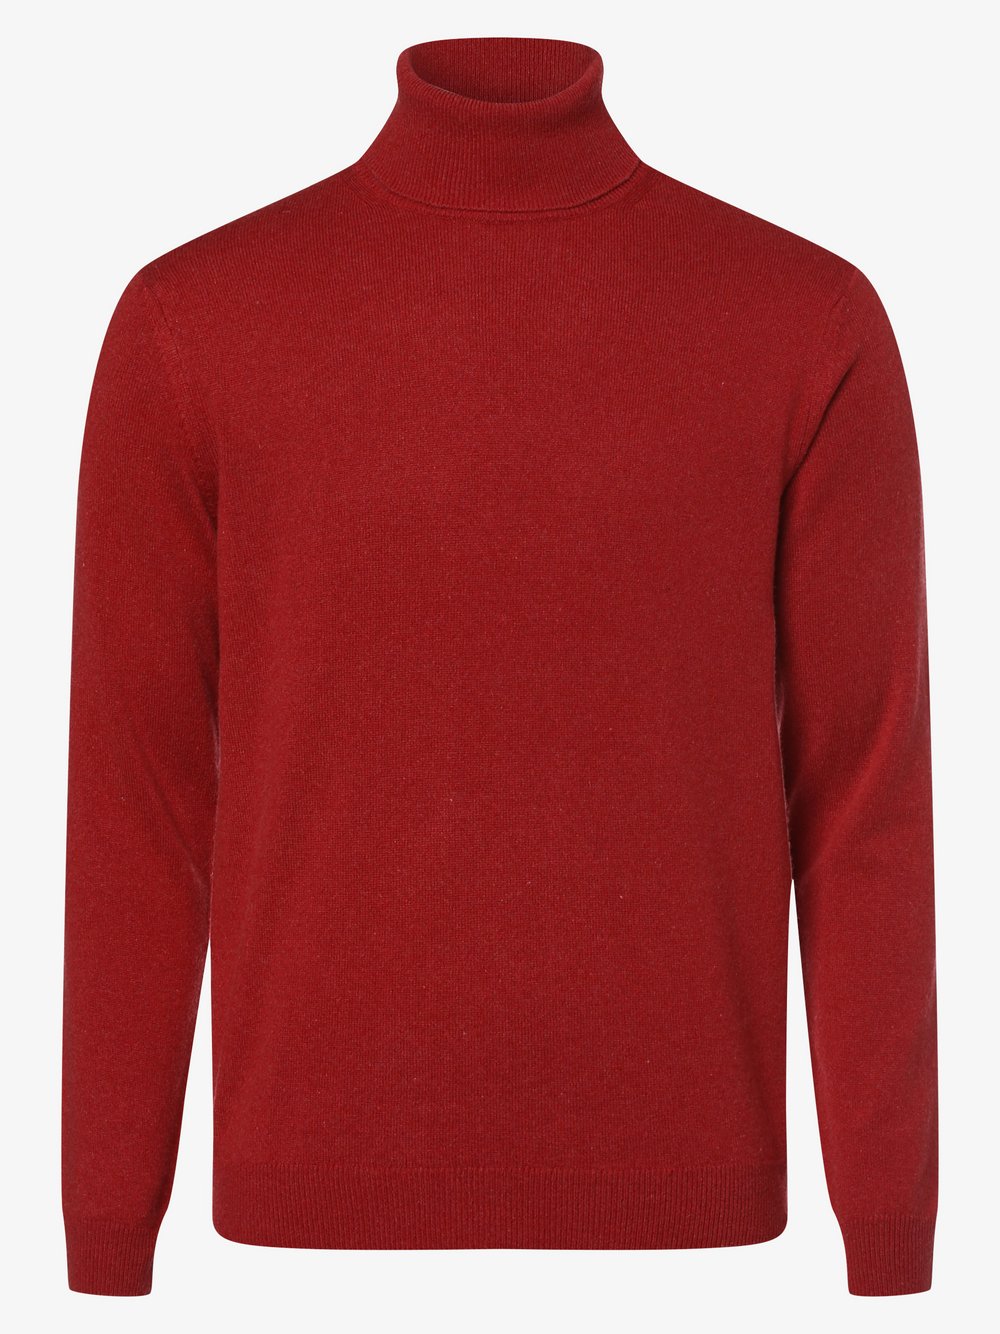 Finshley & Harding - Męski sweter z mieszanki kaszmiru i jedwabiu, czerwony